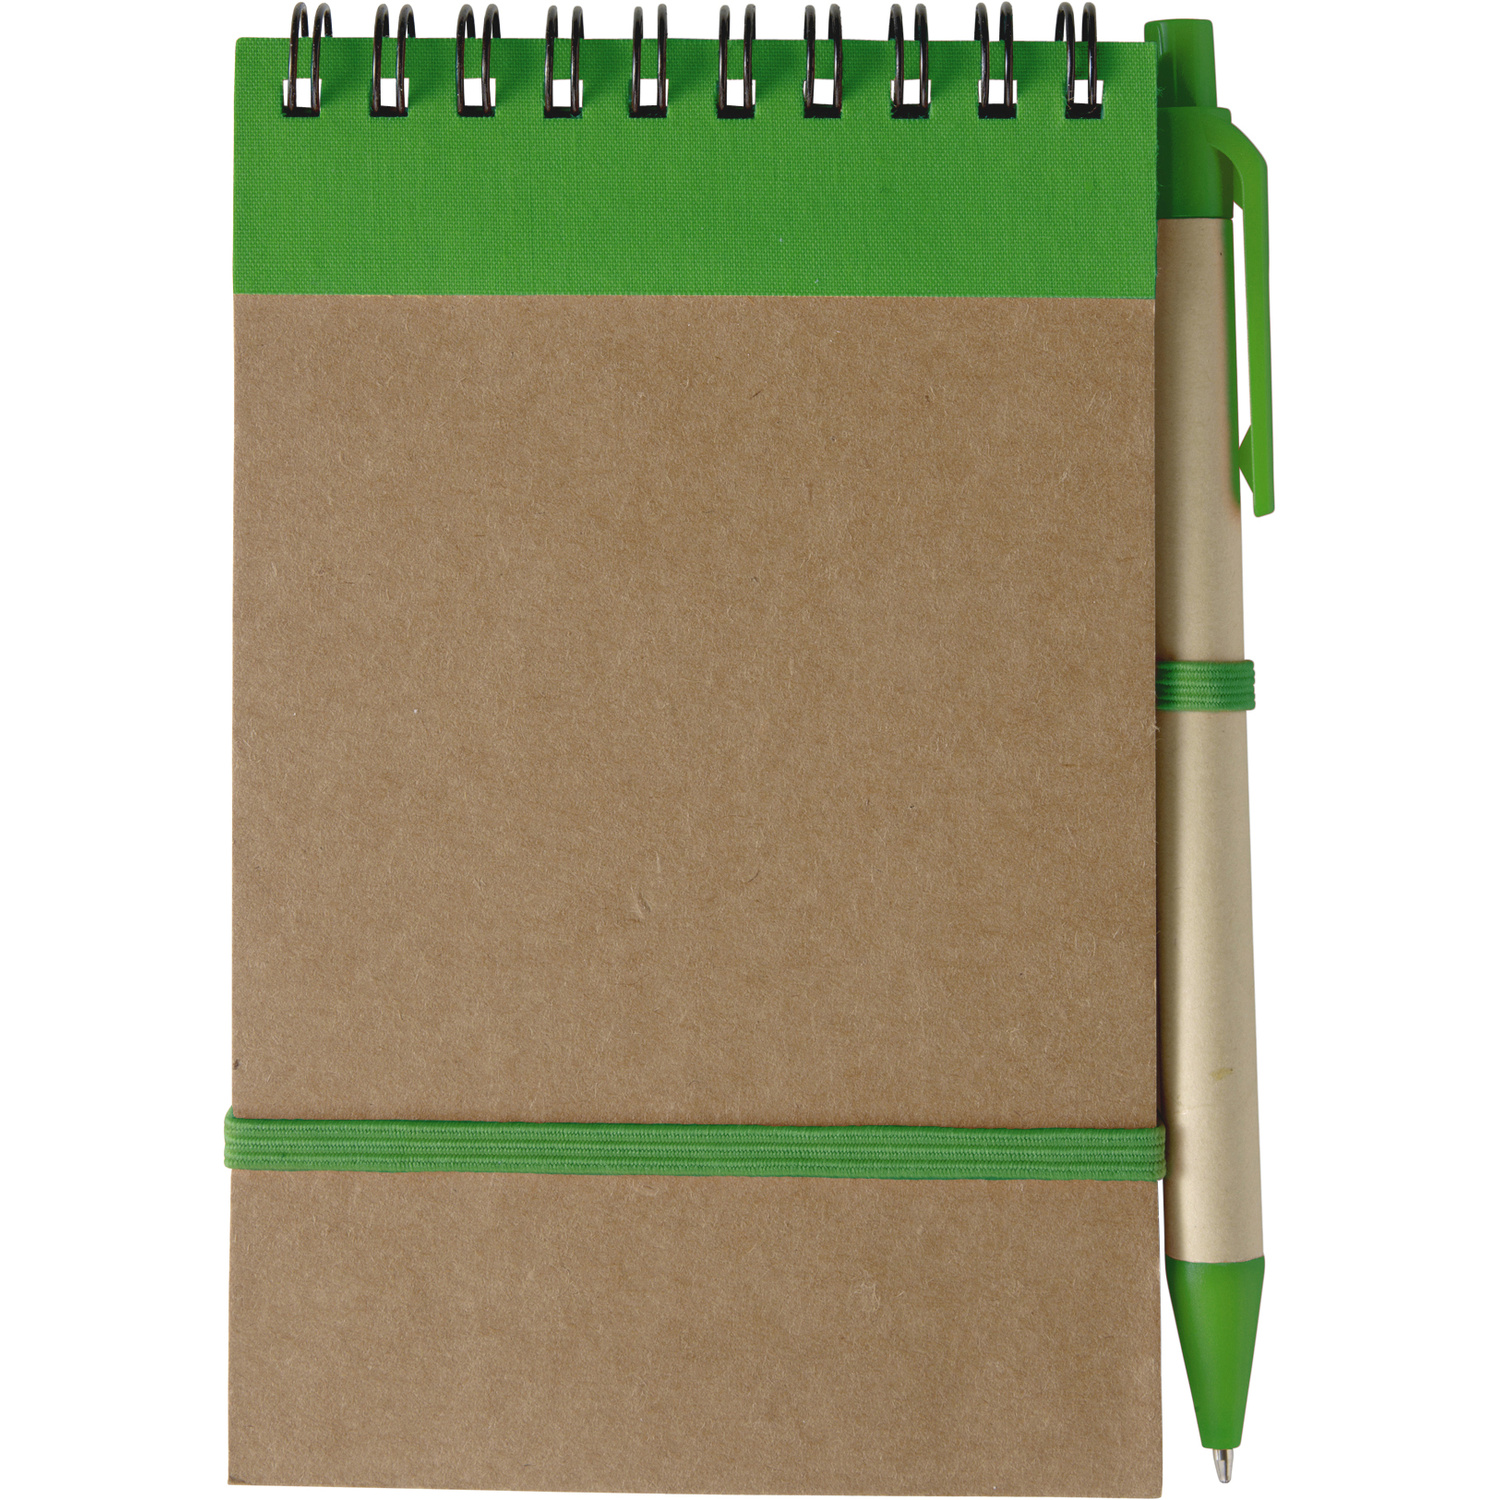 005410 004999999 2d090 frt pro01 fal - Cardboard notebook with ballpen